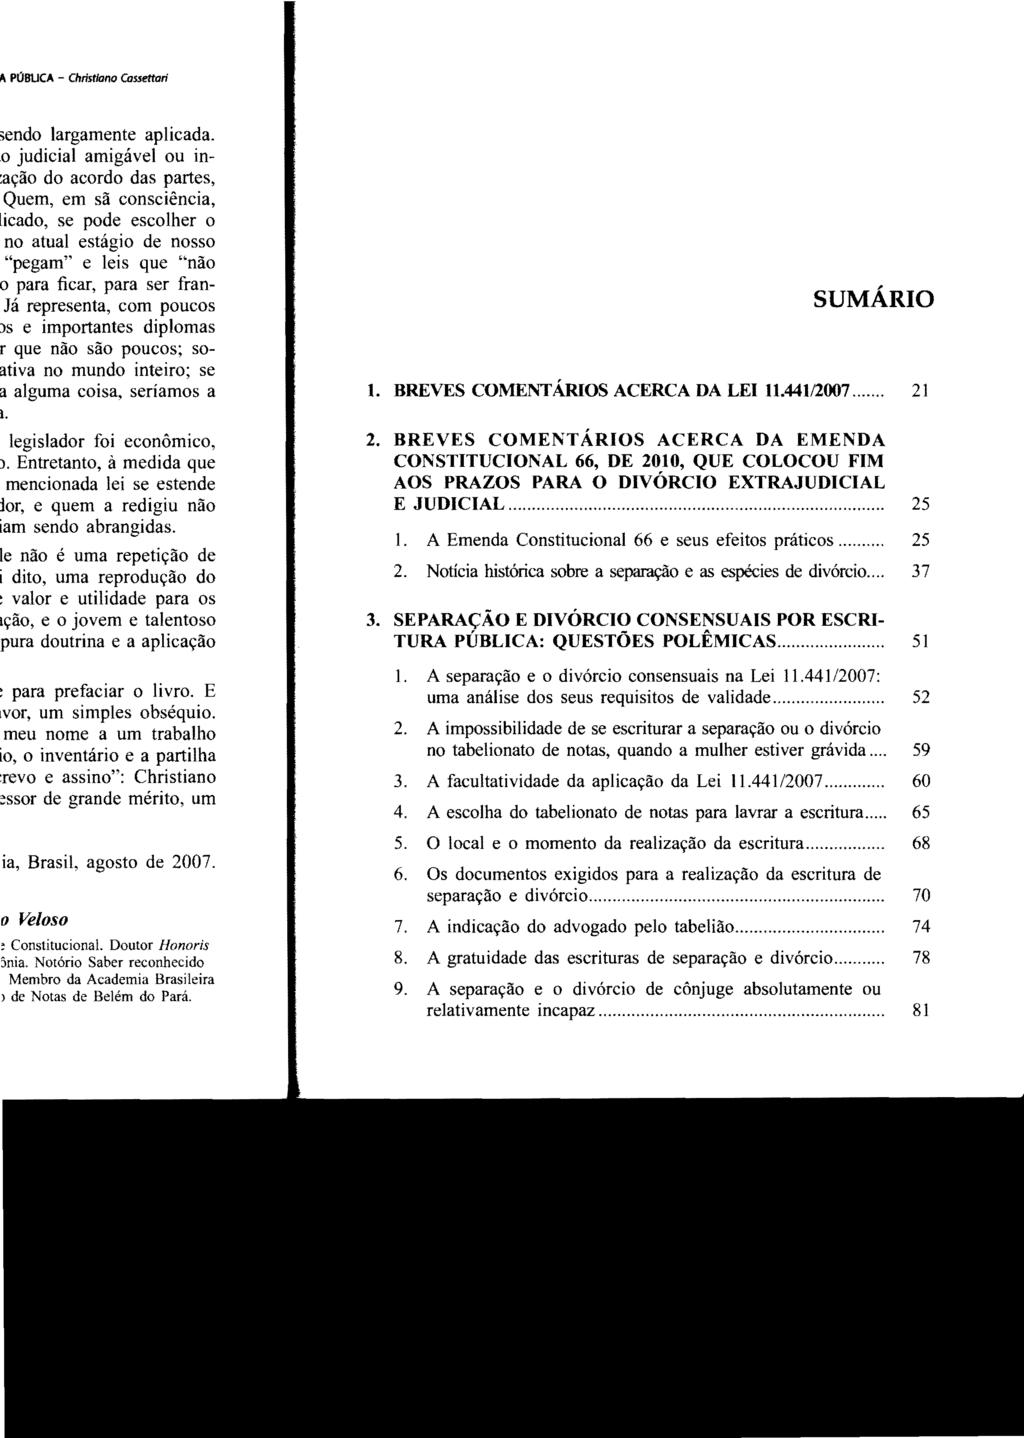 SUMÁRIO 1. BREVES COMENTÁRIOS ACERCA DA LEI 11.441/2007... 21 2. BREVES COMENTÁRIOS ACERCA DA EMENDA CONSTITUCIONAL 66, DE 2010, QUE COLOCOU FIM AOS PRAZOS PARA O DIVÓRCIO EXTRAJUDICIAL E JUDICIAL.